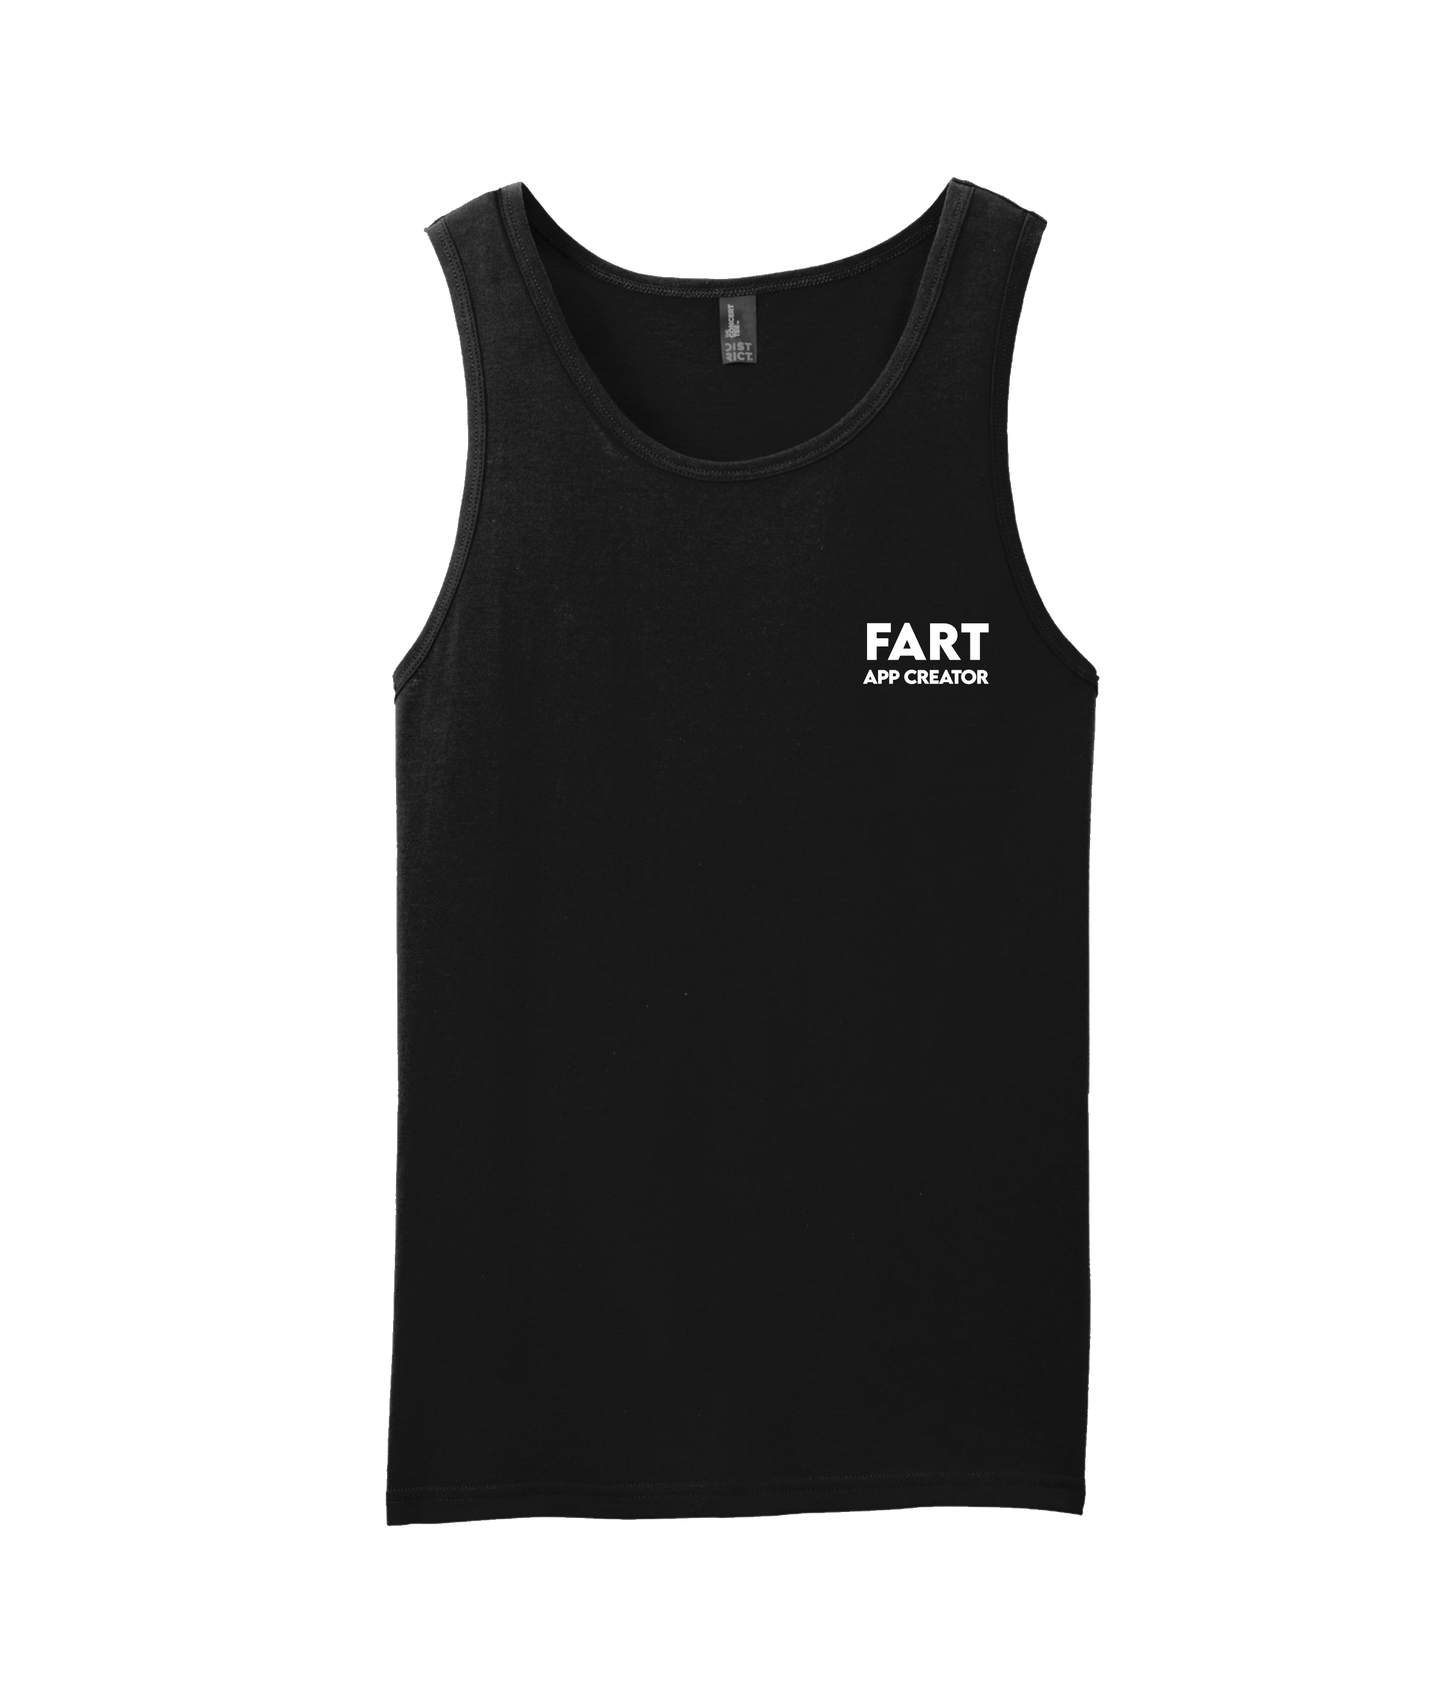 iFart - APP CREATOR - Black T Shirt